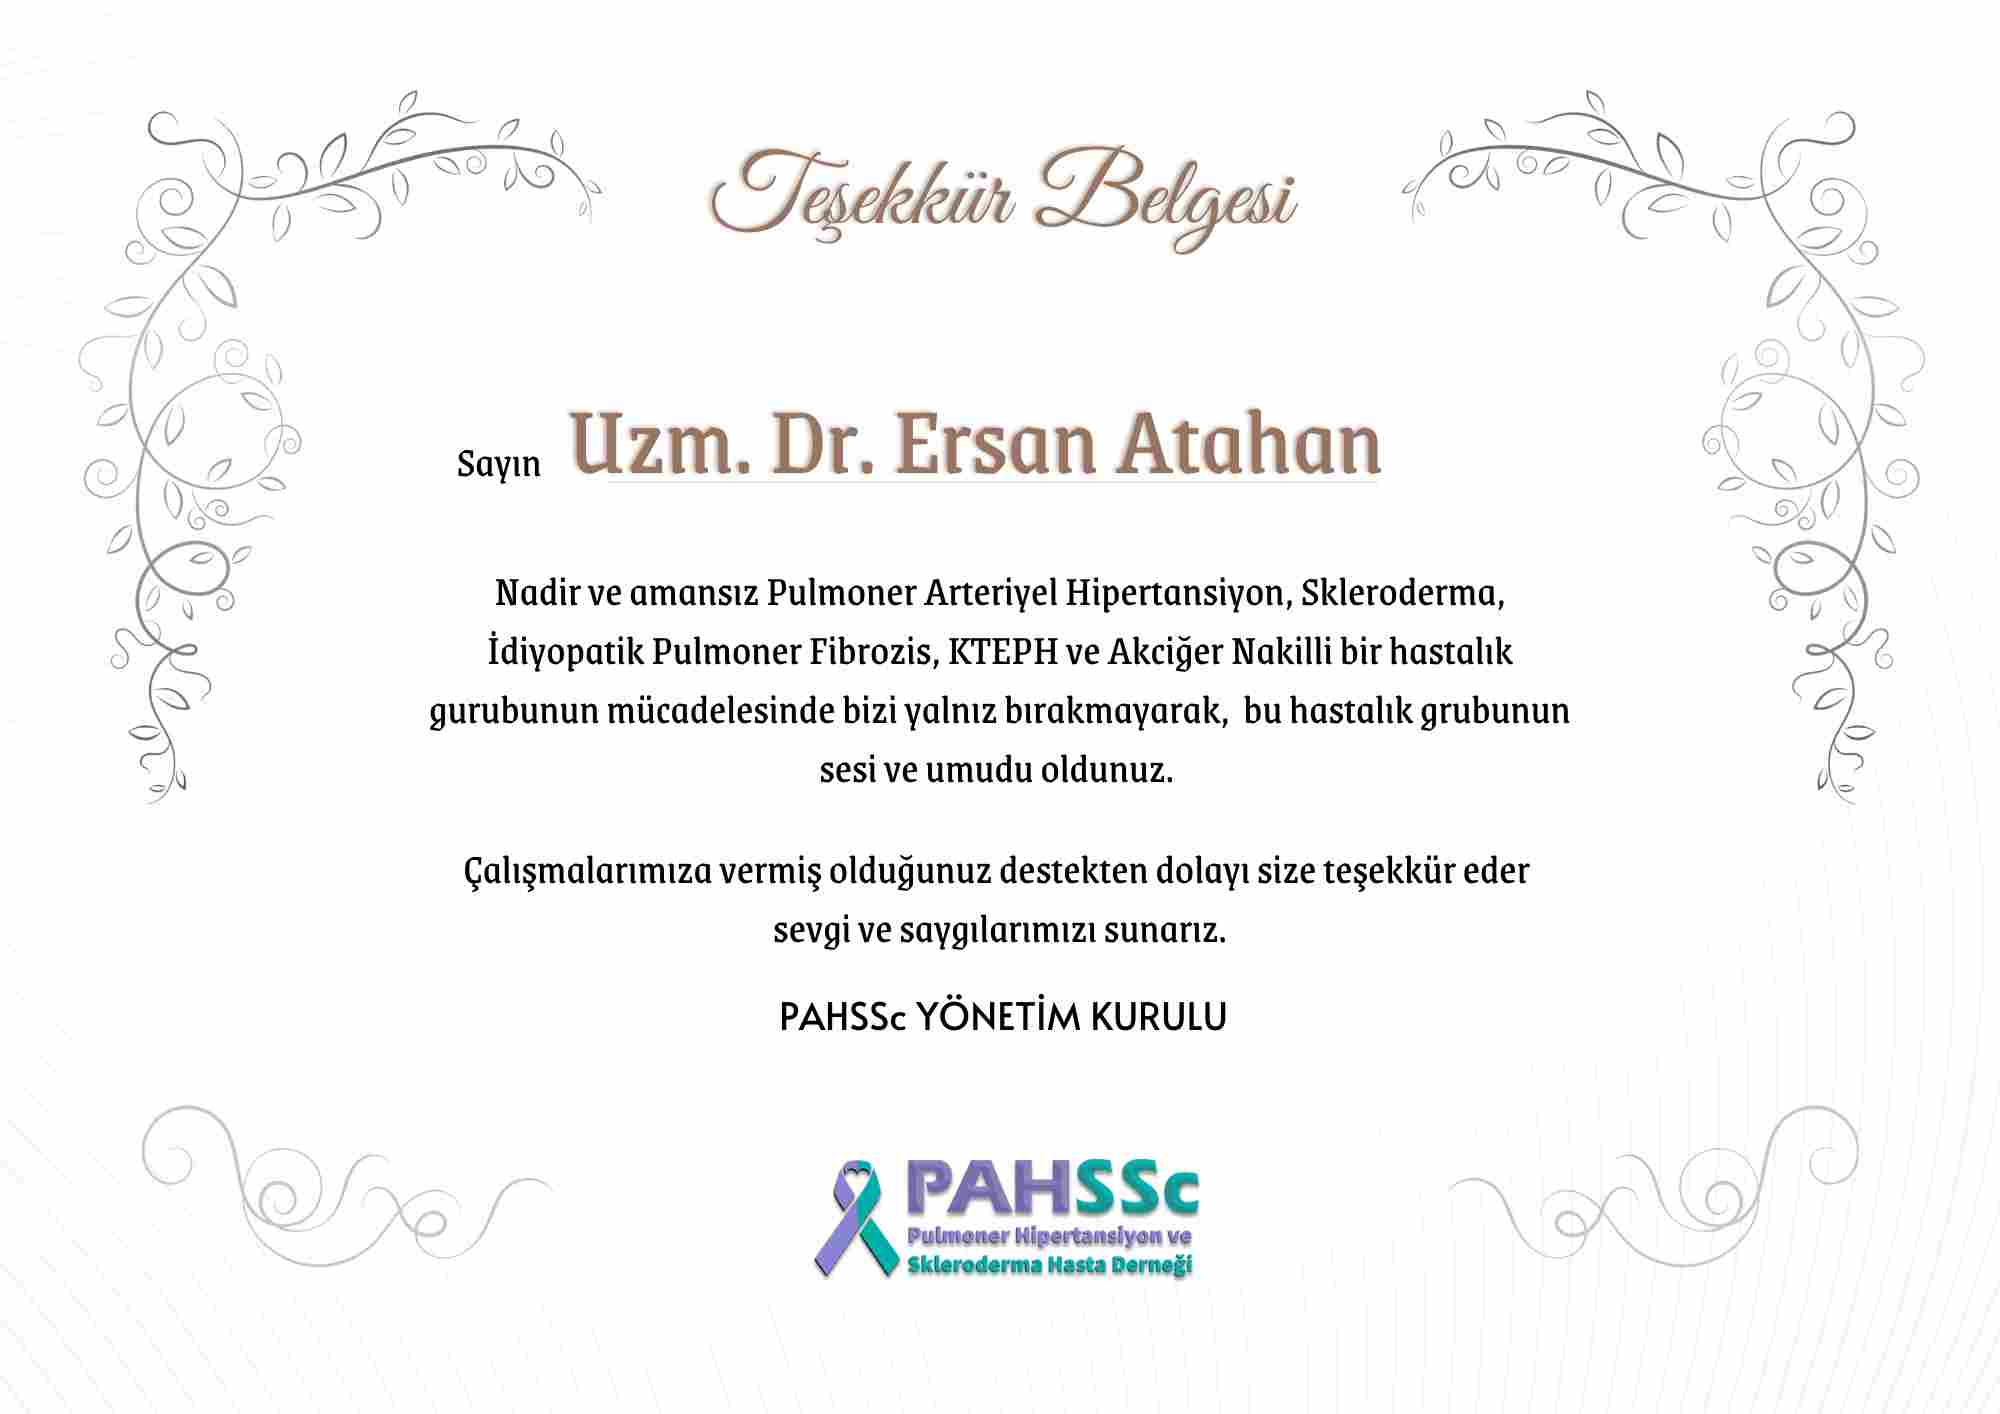 Uzm. Dr. Erdan Atahan